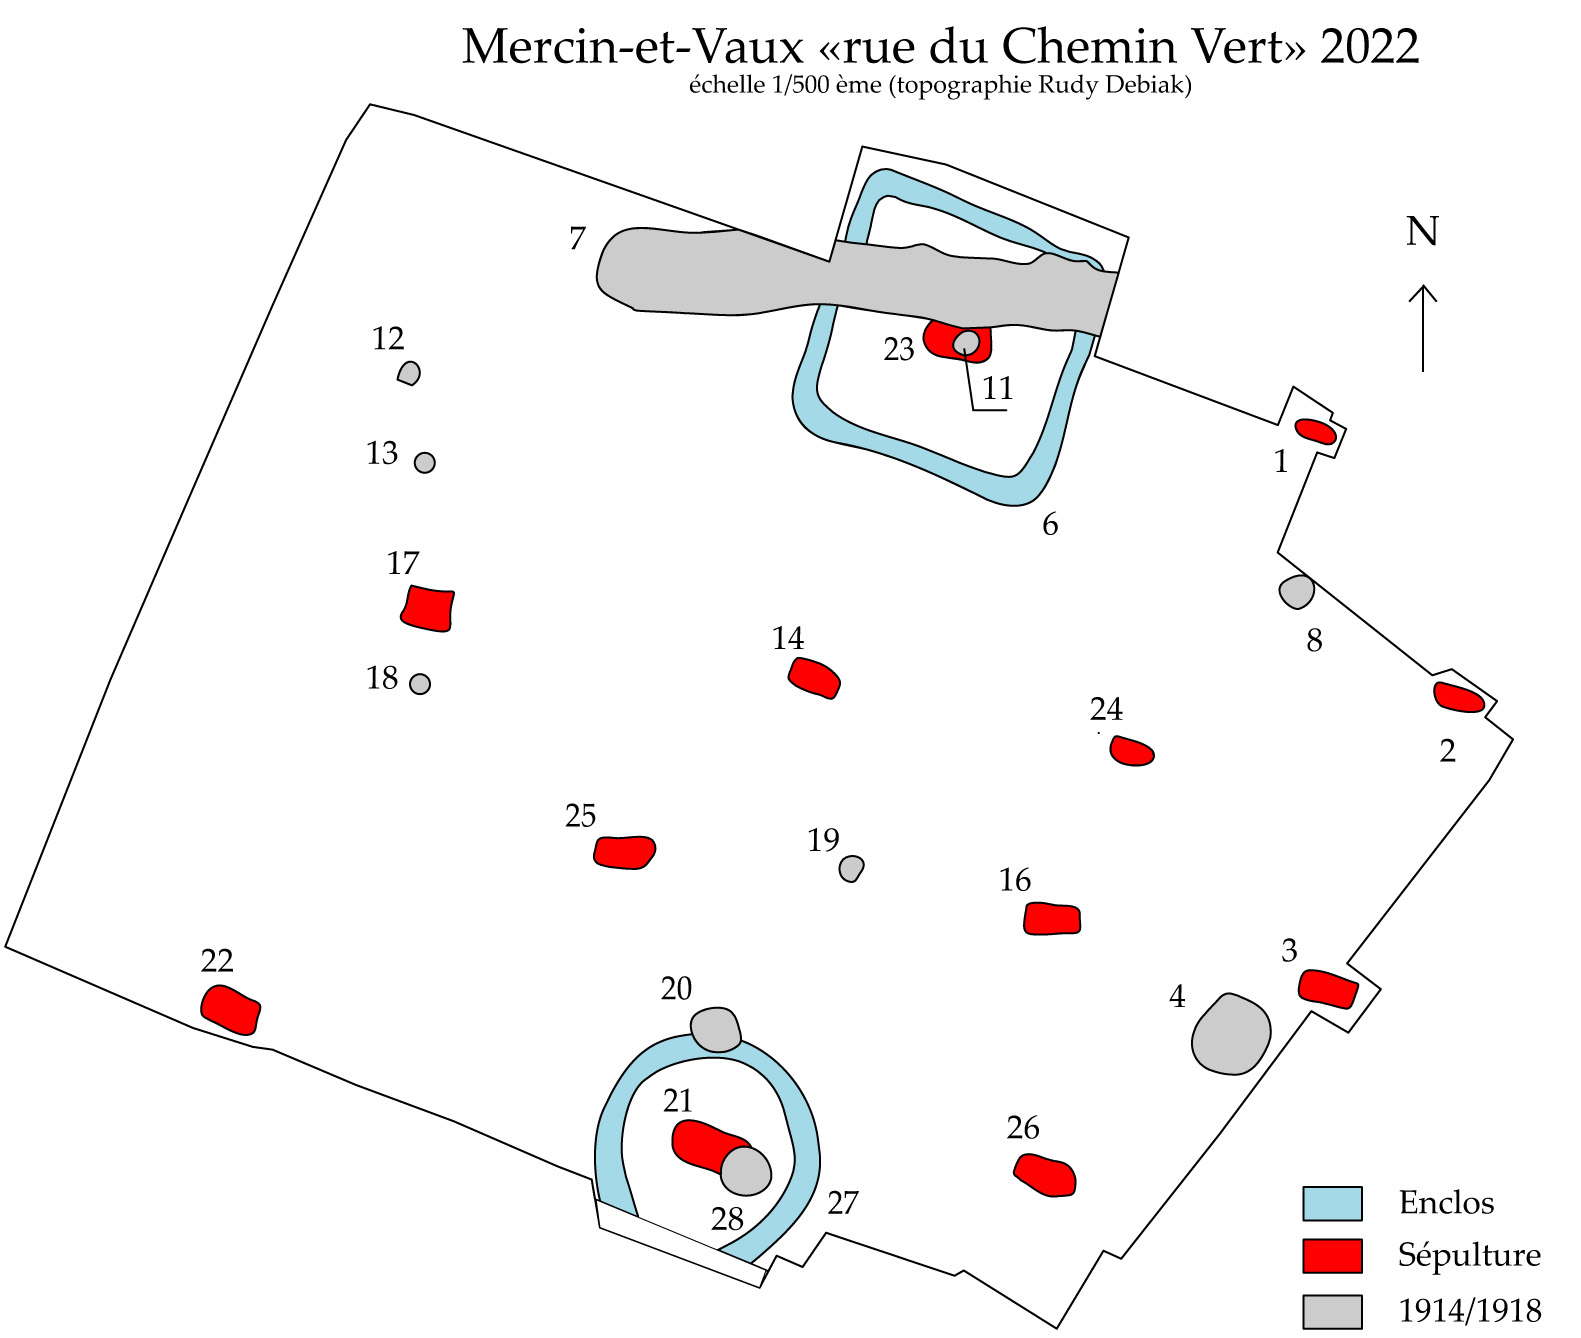 Mercin-et-Vaux 1